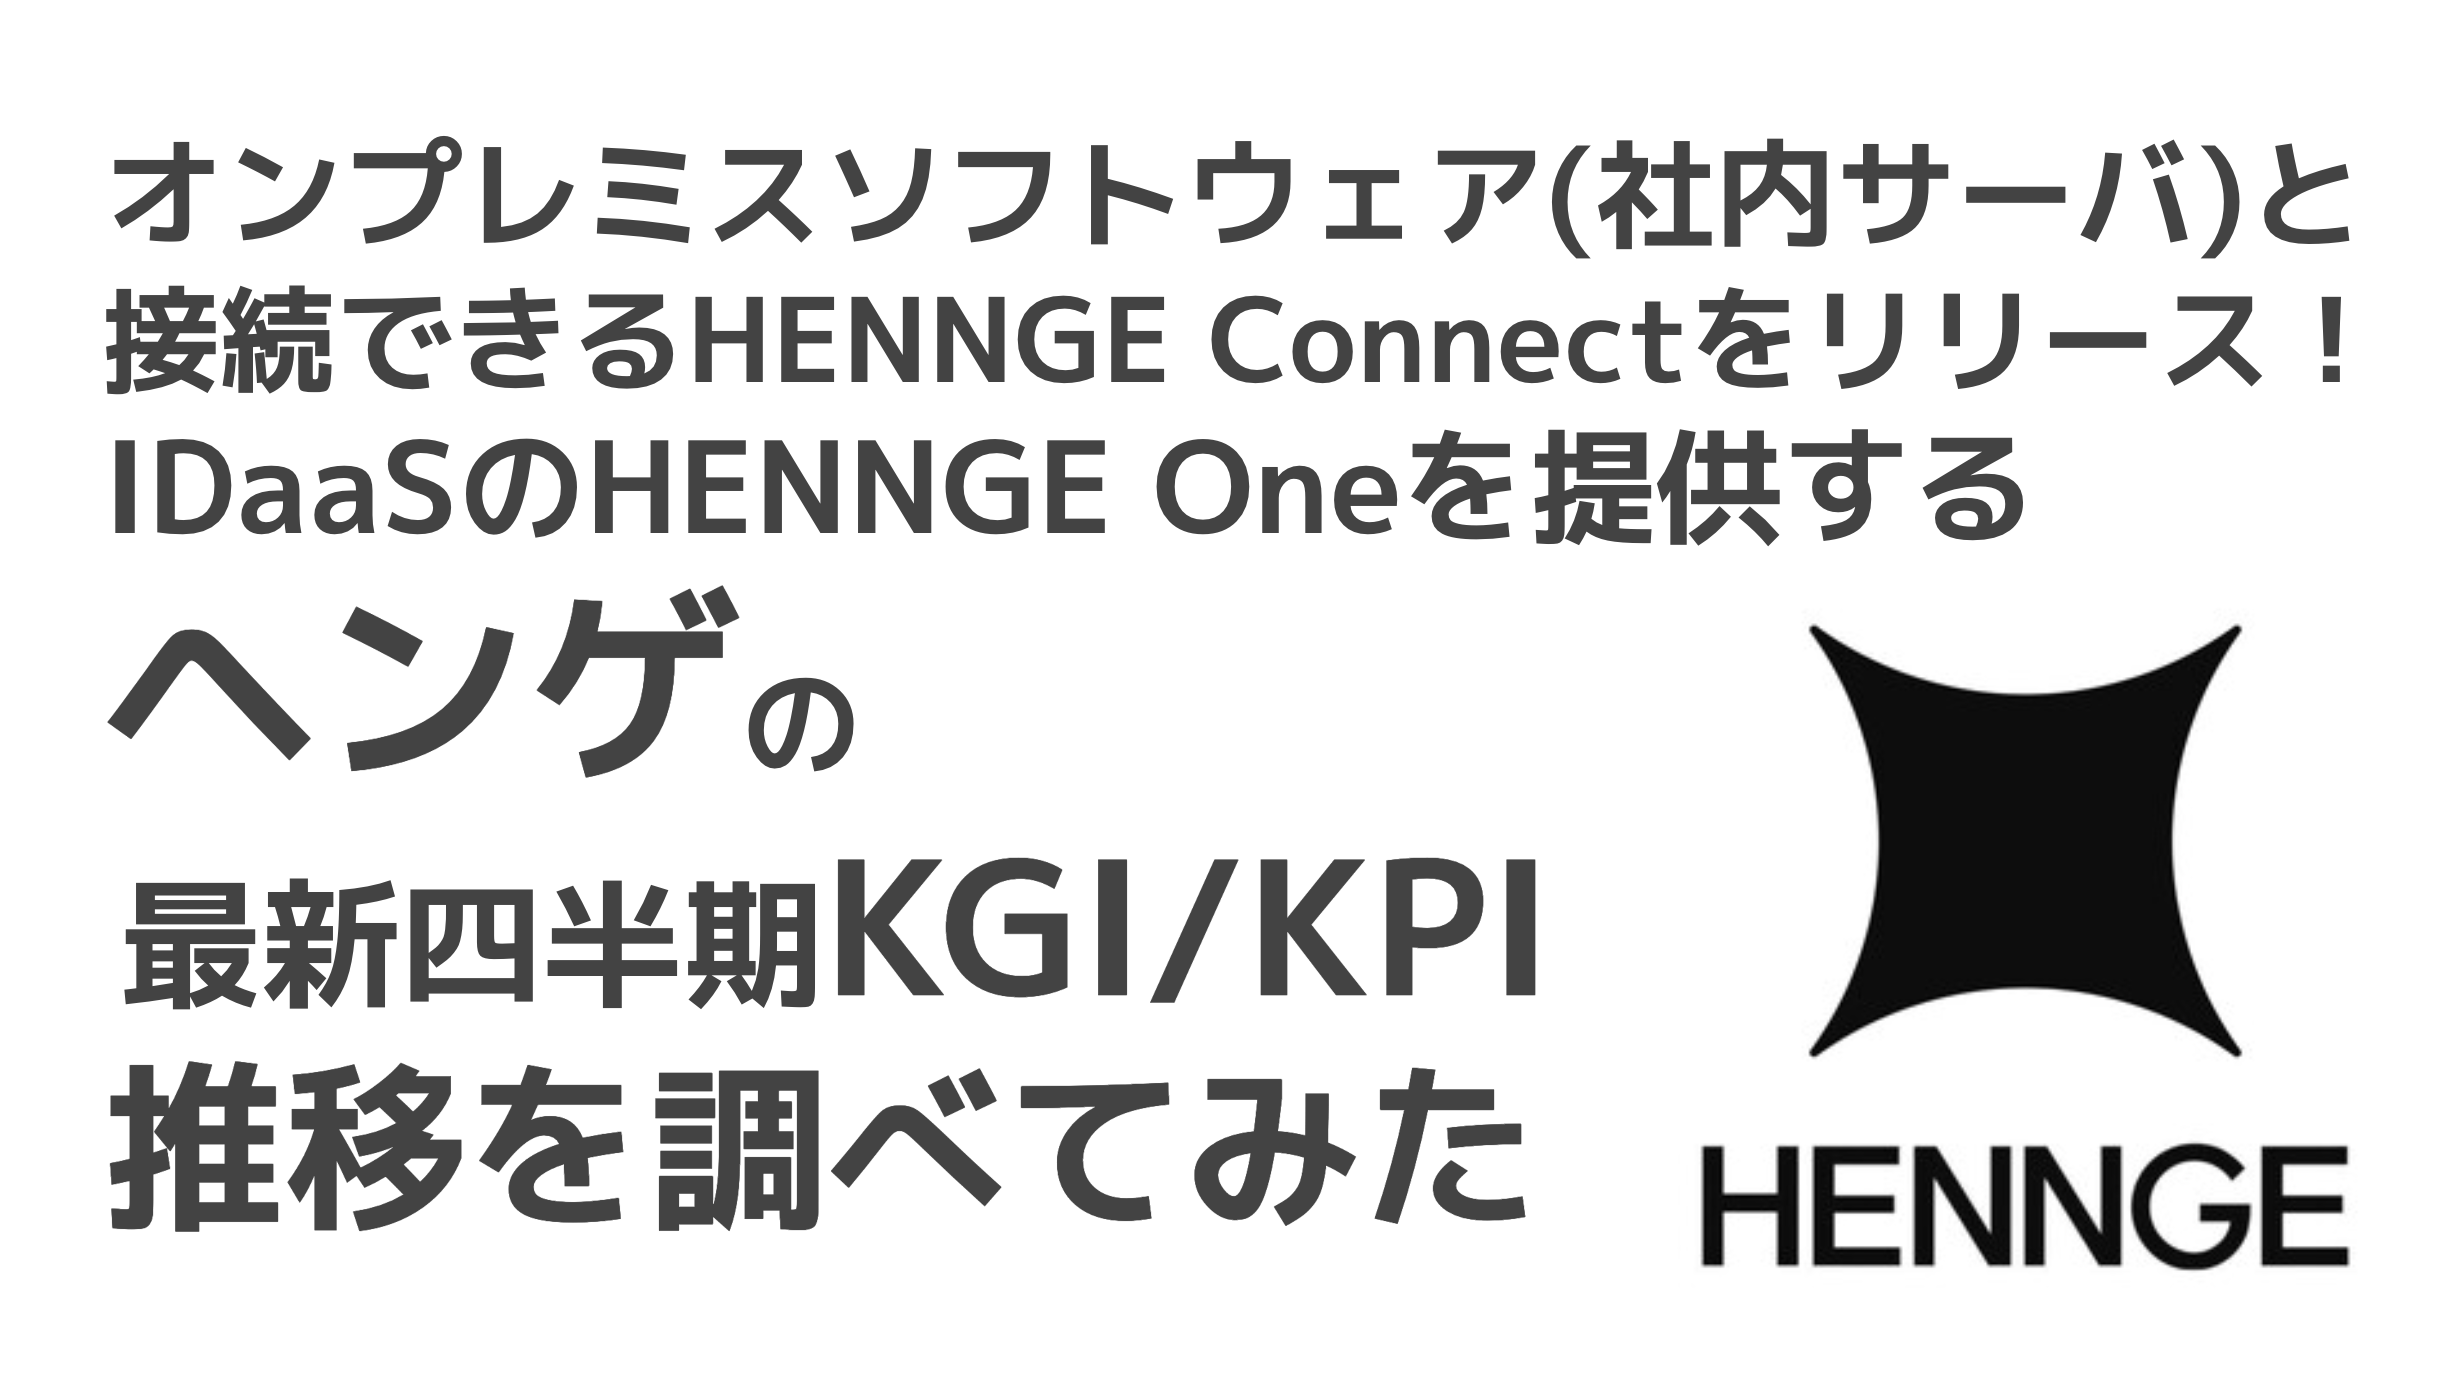 saaslife_オンプレミスソフトウェア(社内サーバ)と接続できるHENNGE Connectをリリース！IDaaSのHENNGE Oneを提供するヘンゲの最新四半期KGI/KPI推移を調べてみた